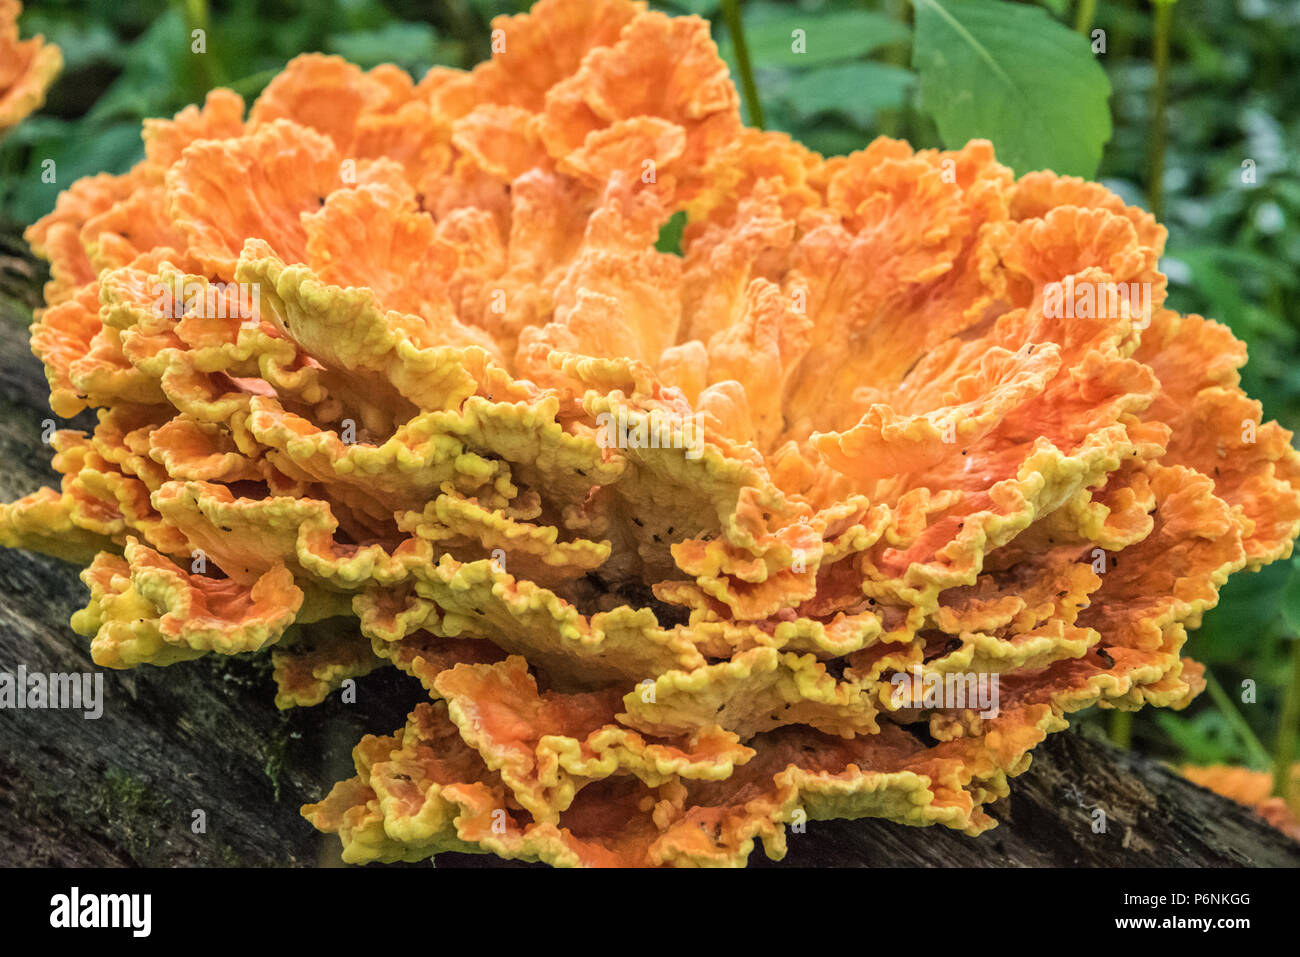 Pollo de colores brillantes de los bosques de hongos comestibles, un manjar en la familia de las setas. Foto de stock